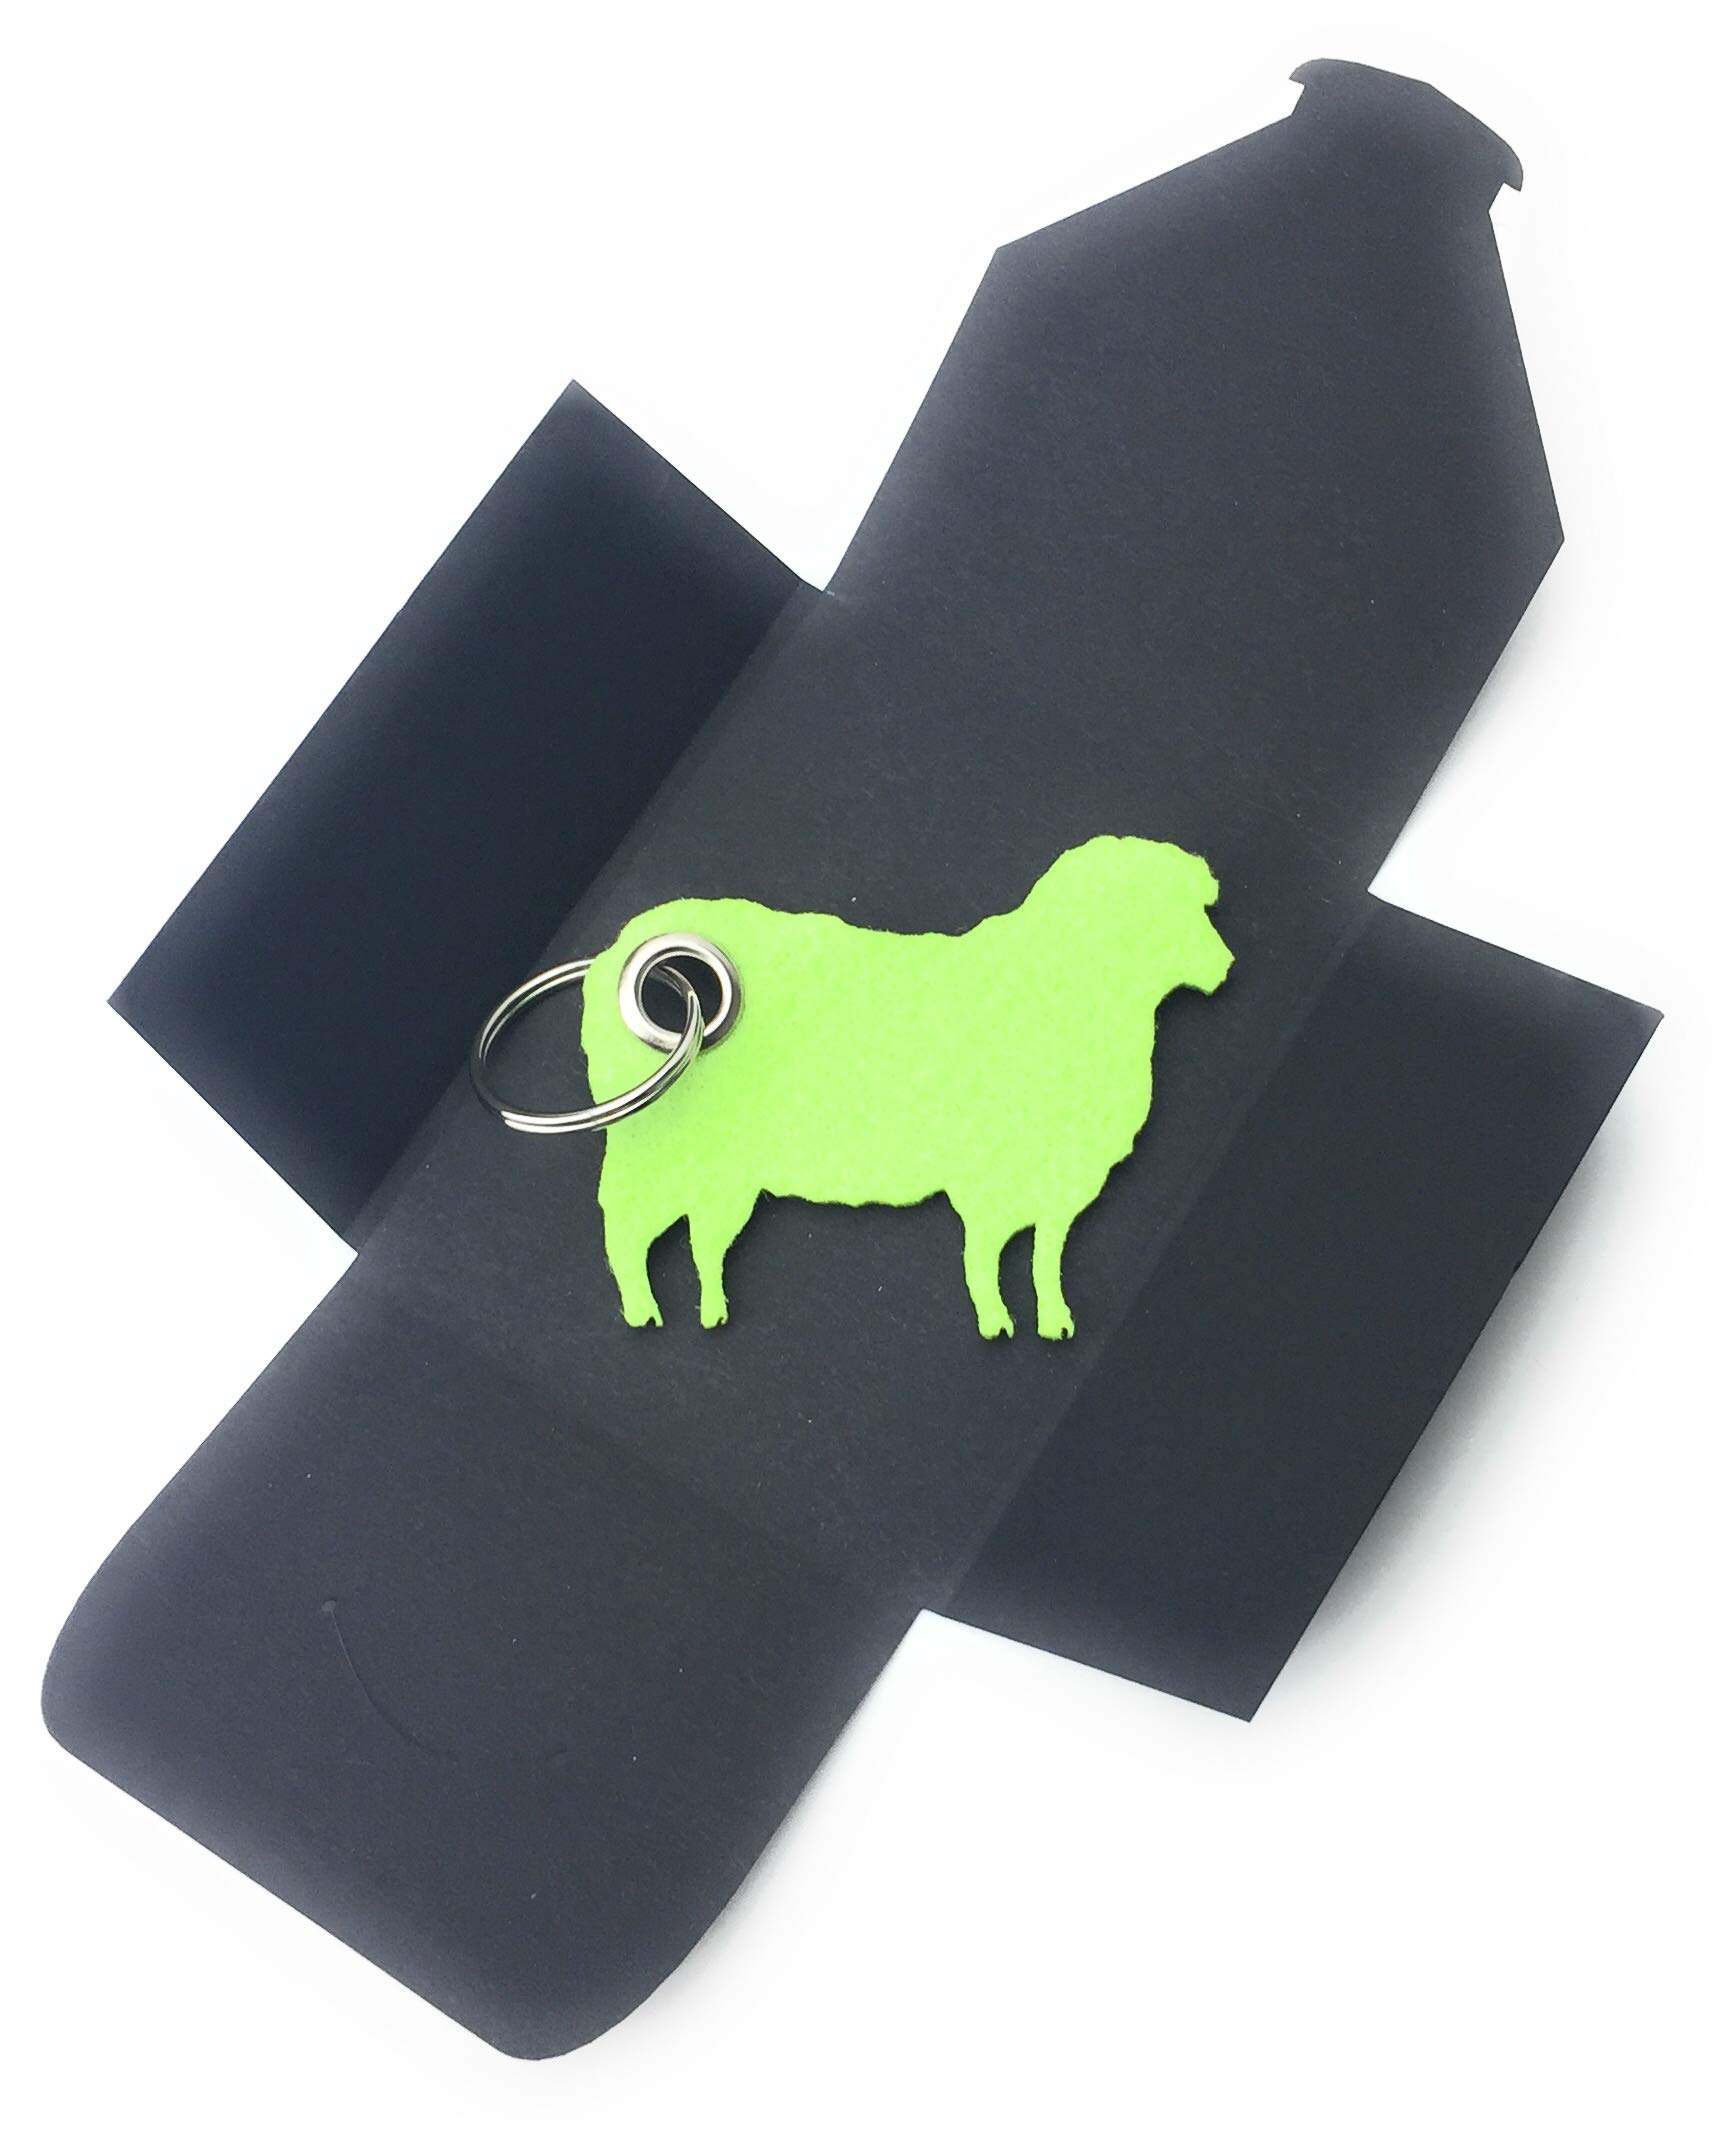 Schlüsselanhänger aus Filz - Schaf/Lamm - hell-grün - als besonderes Geschenk von filzschneider